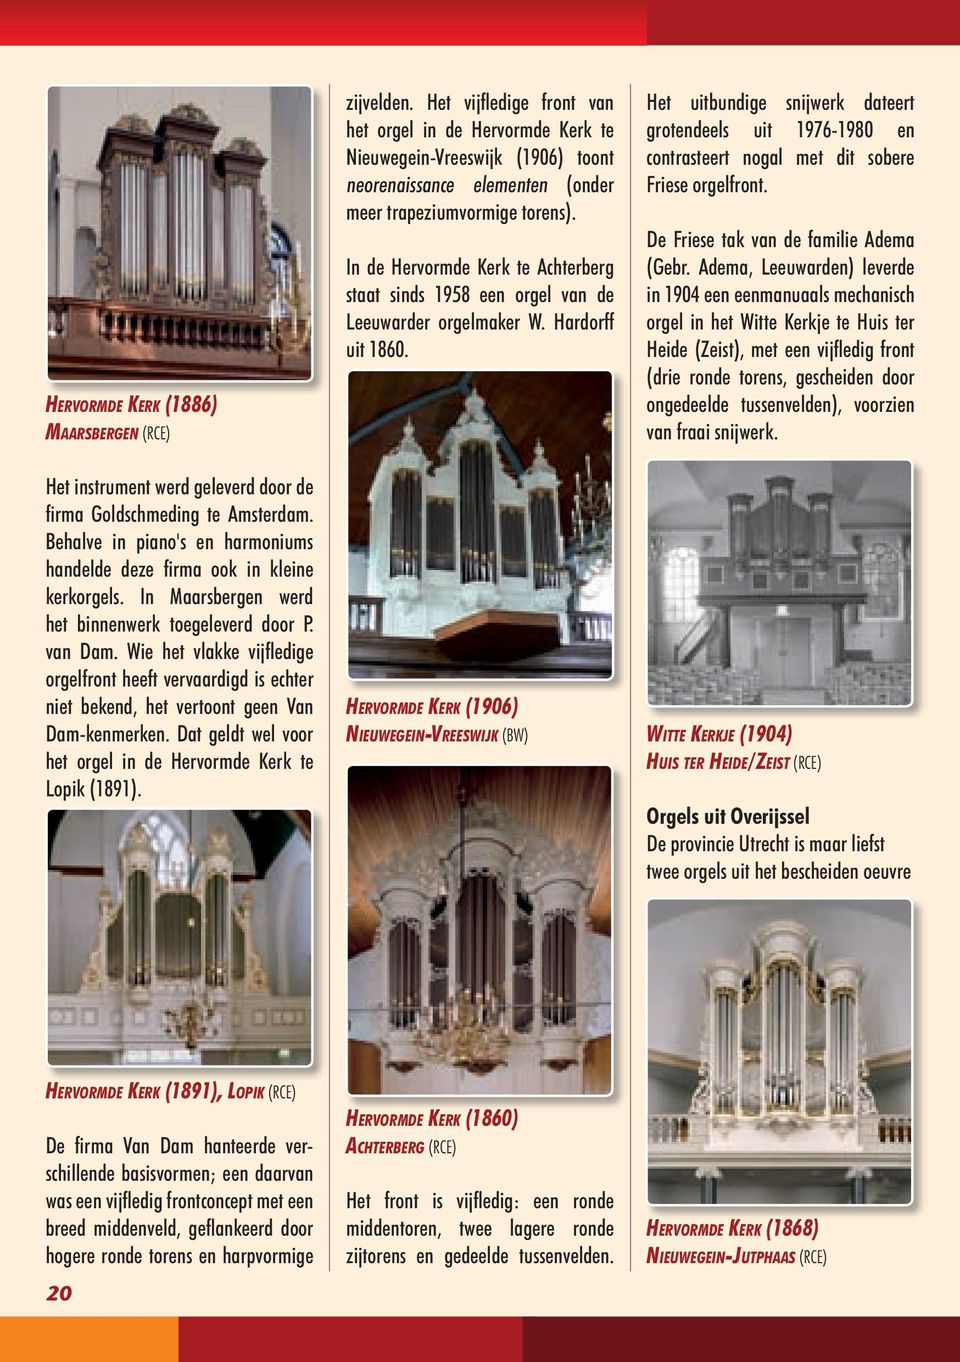 In de Hervormde Kerk te Achterberg staat sinds 1958 een orgel van de Leeuwarder orgelmaker W. Hardorff uit 1860.